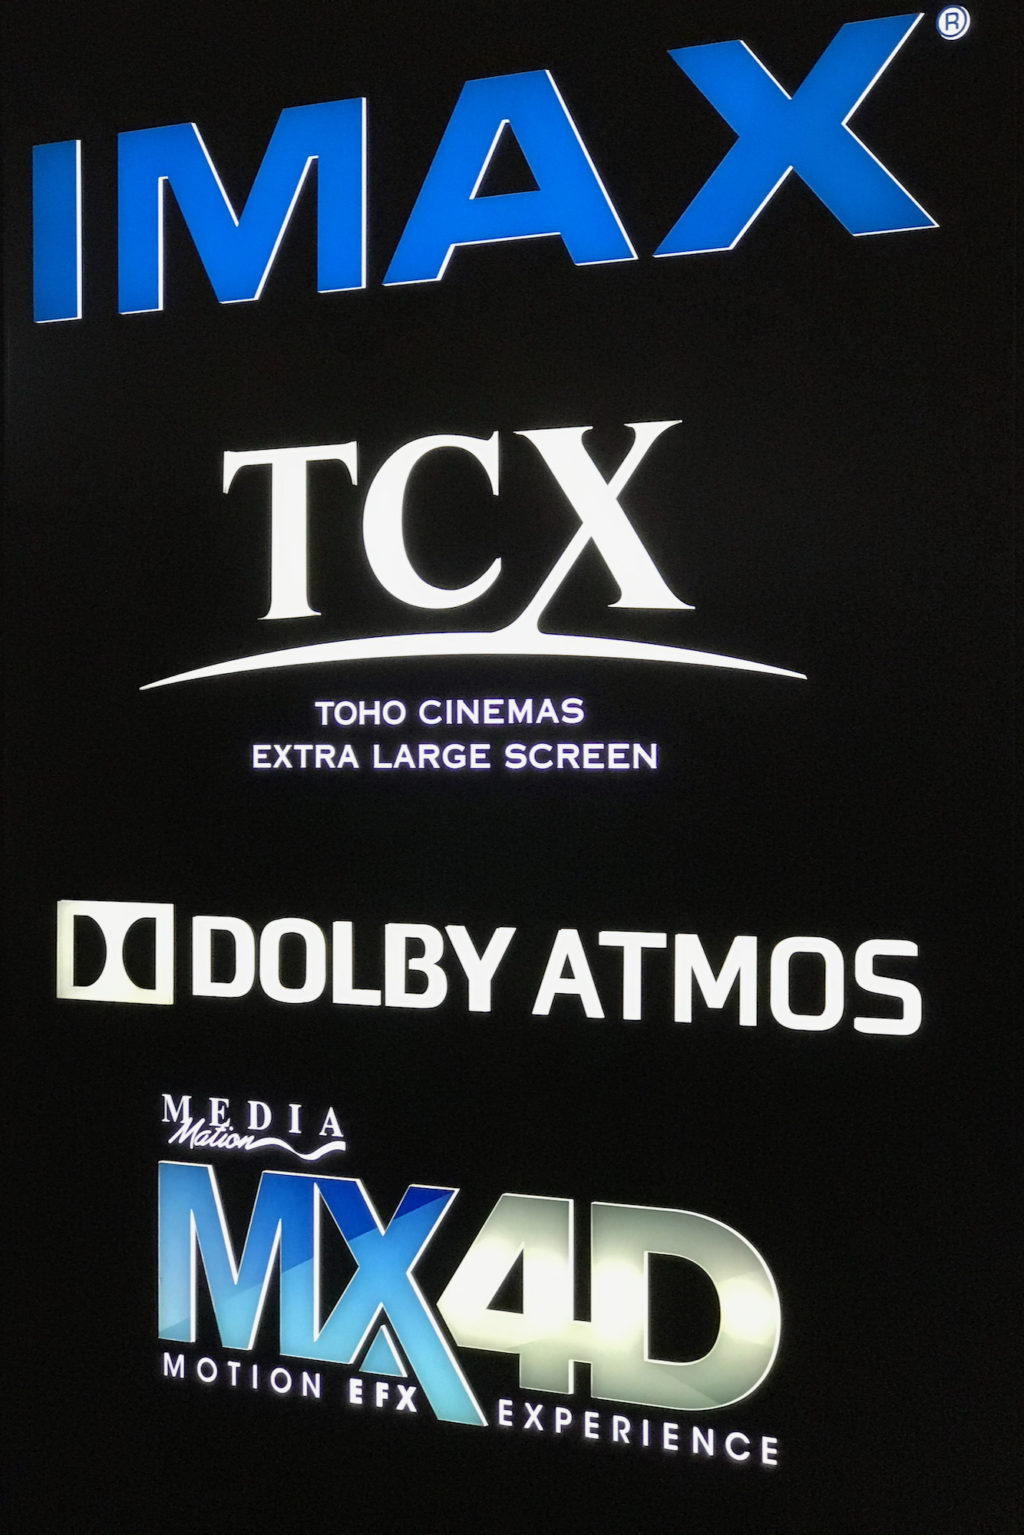 MX4D